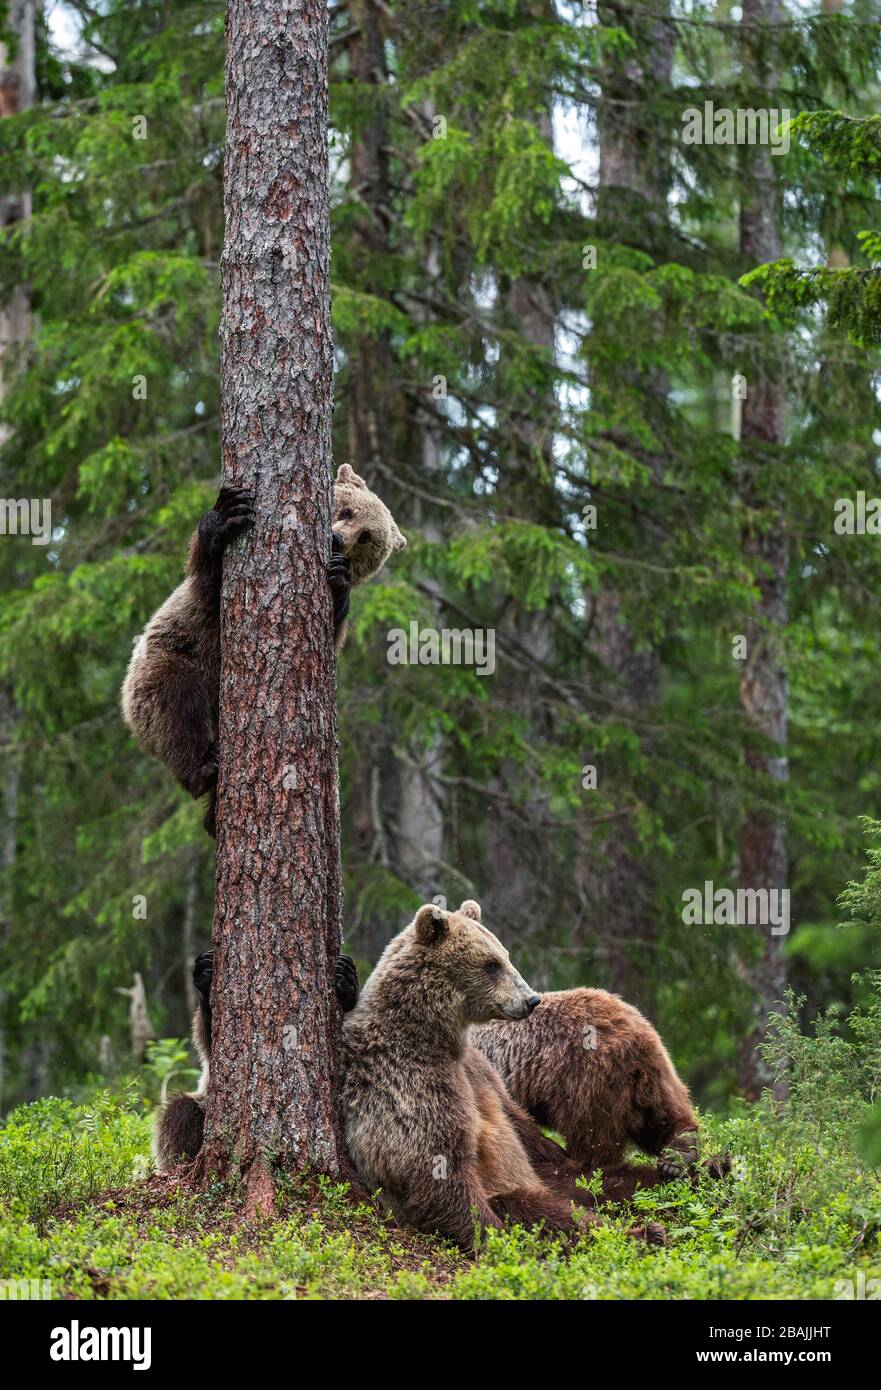 Sie trägt und trägt Kübel im sommerlichen Kiefernwald. Braunbärenkuppe klettert im Sommerwald auf Baum. Wissenschaftlicher Name: Ursus arctos. Natürlicher Lebensraum. Stockfoto